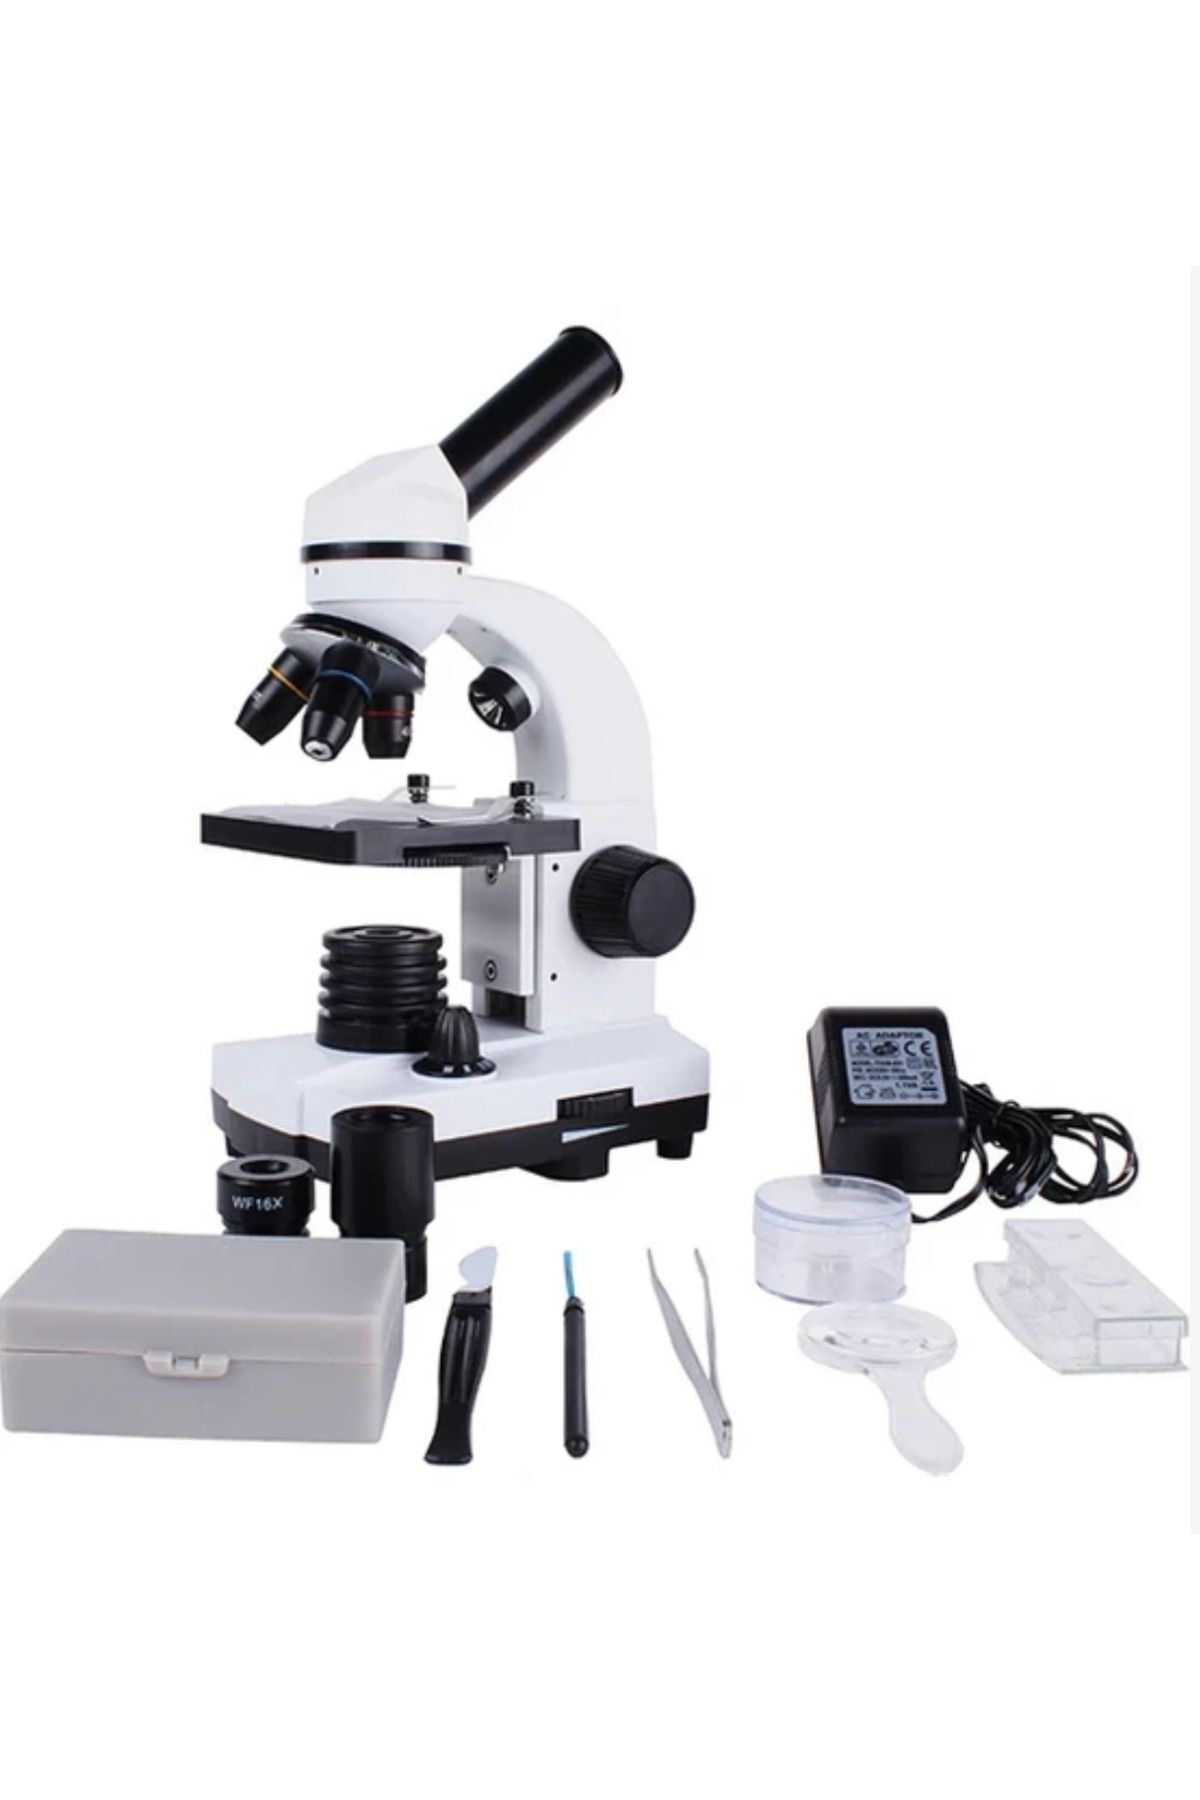 bnm Okul Laboratuarlarına Uygun Eğitim Mikroskobu 640X büyütme